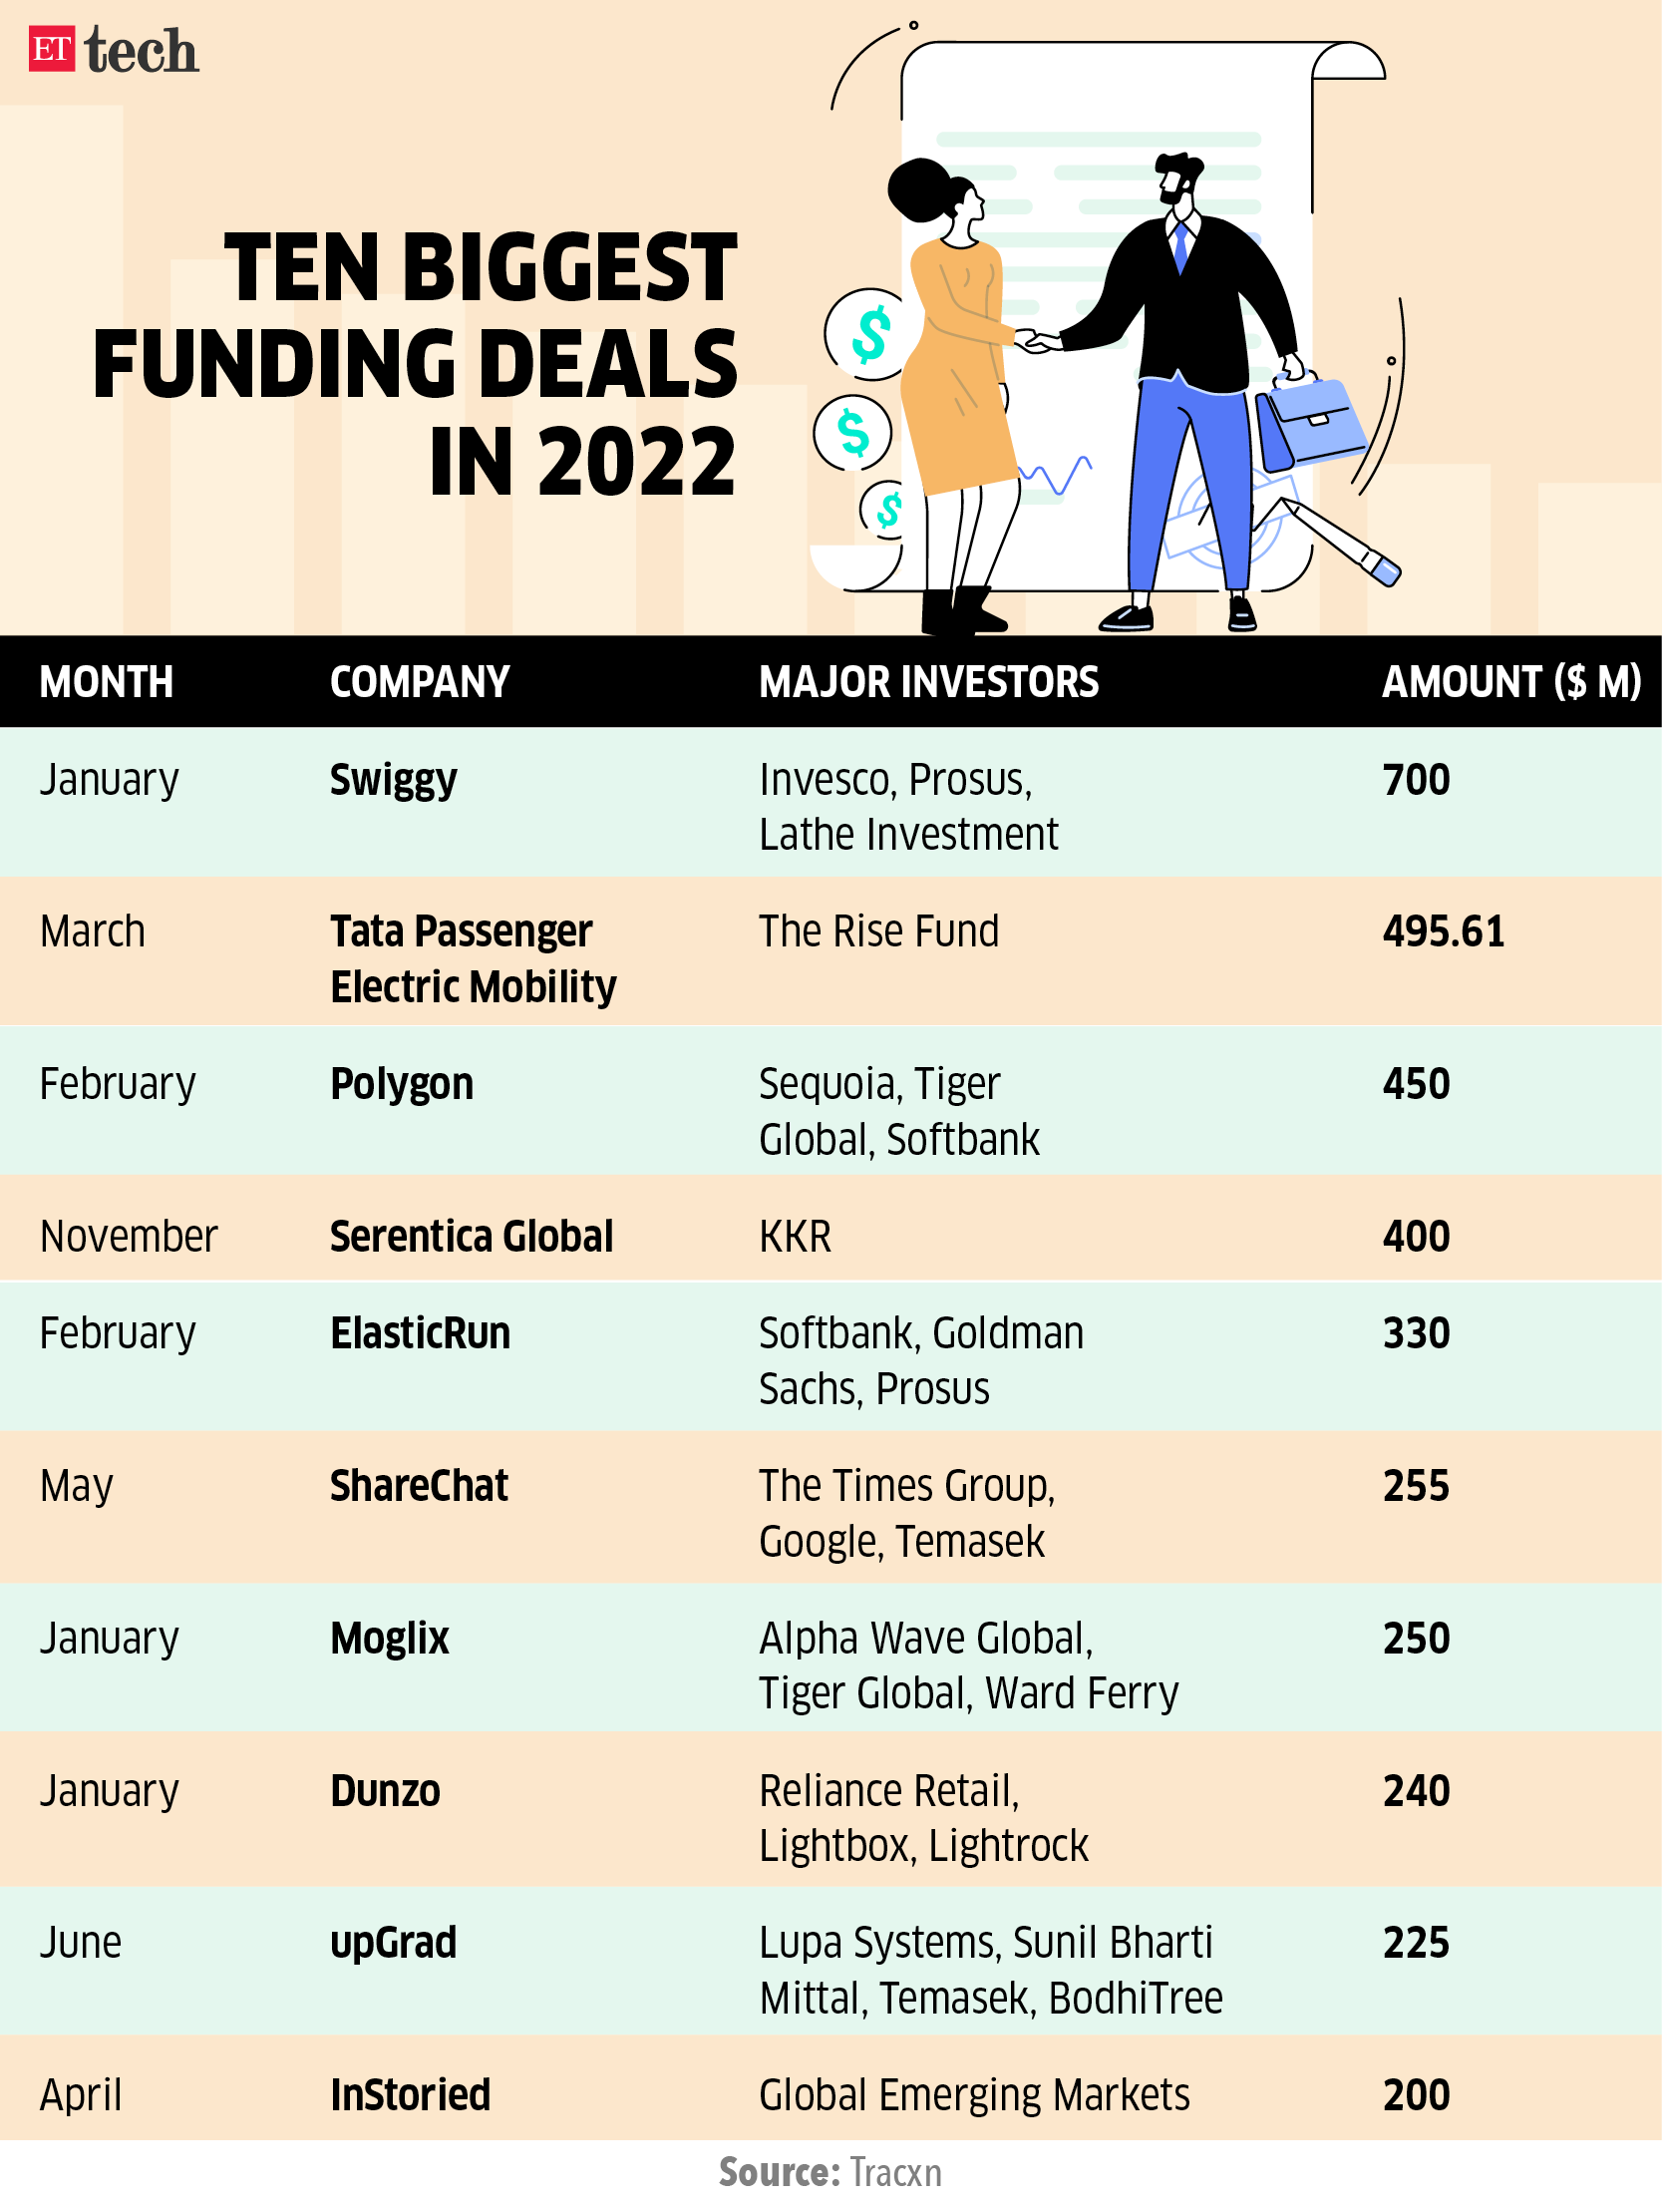 Ten biggest funding deals in 2022